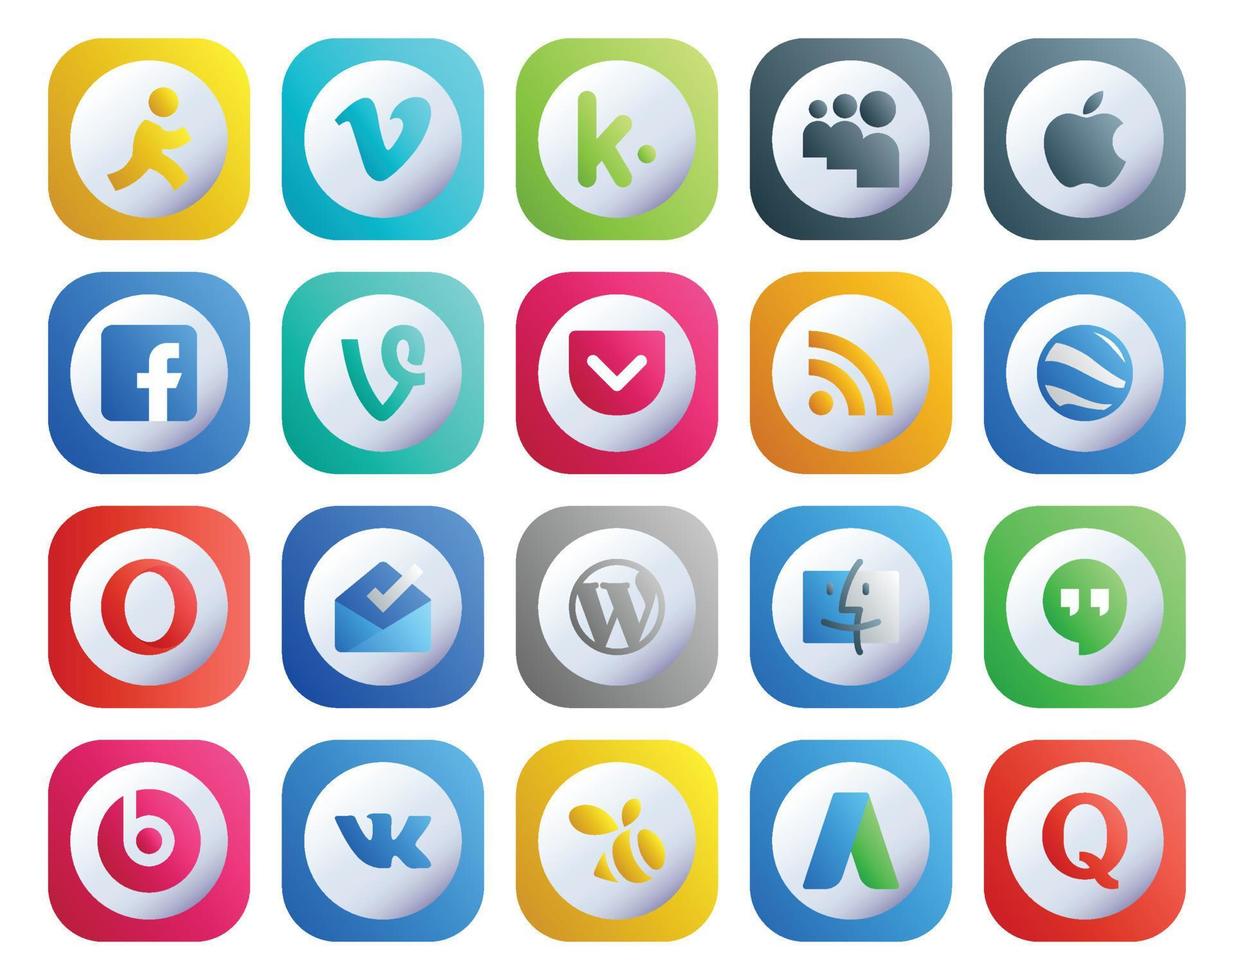 20 Social Media Icon Pack Including beats pill finder pocket cms inbox vector